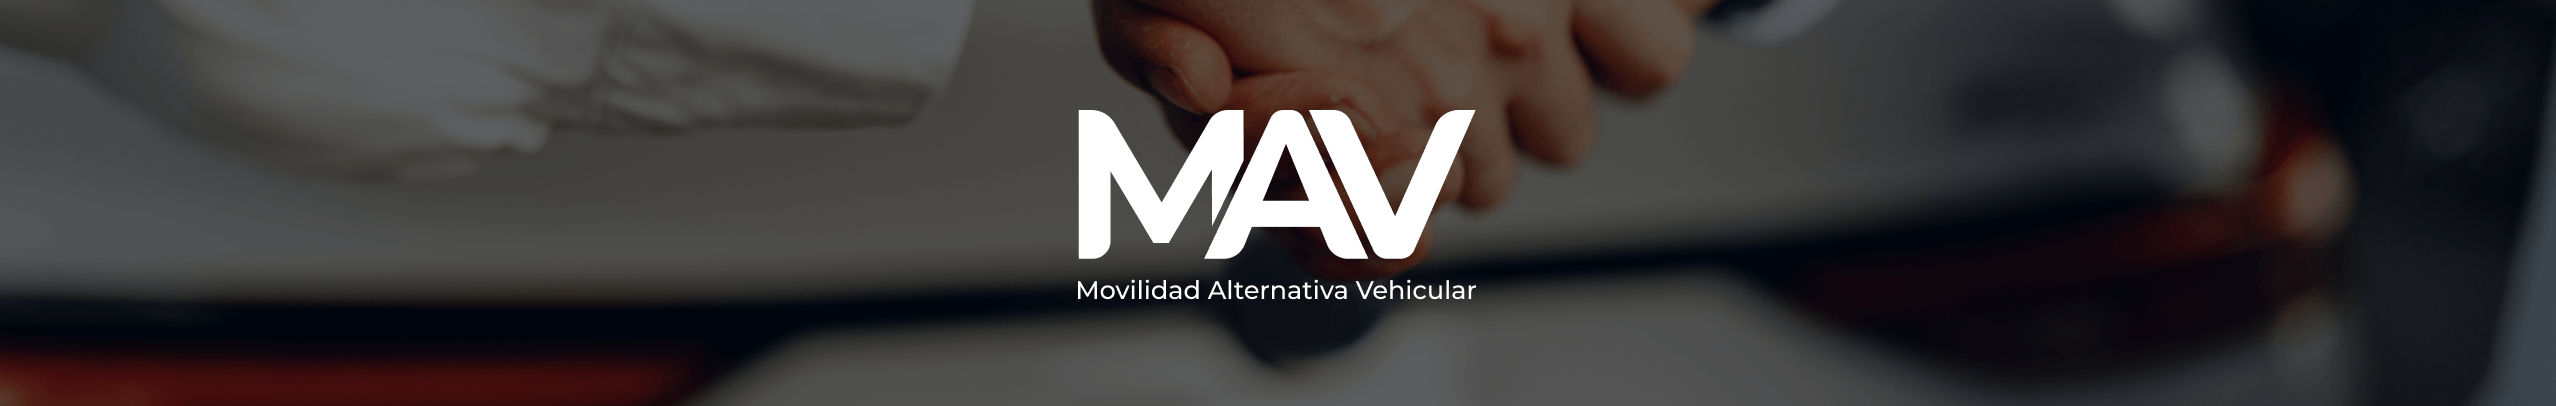 Jorge Cortés MAV - Movilidad Alternativa Vehicular